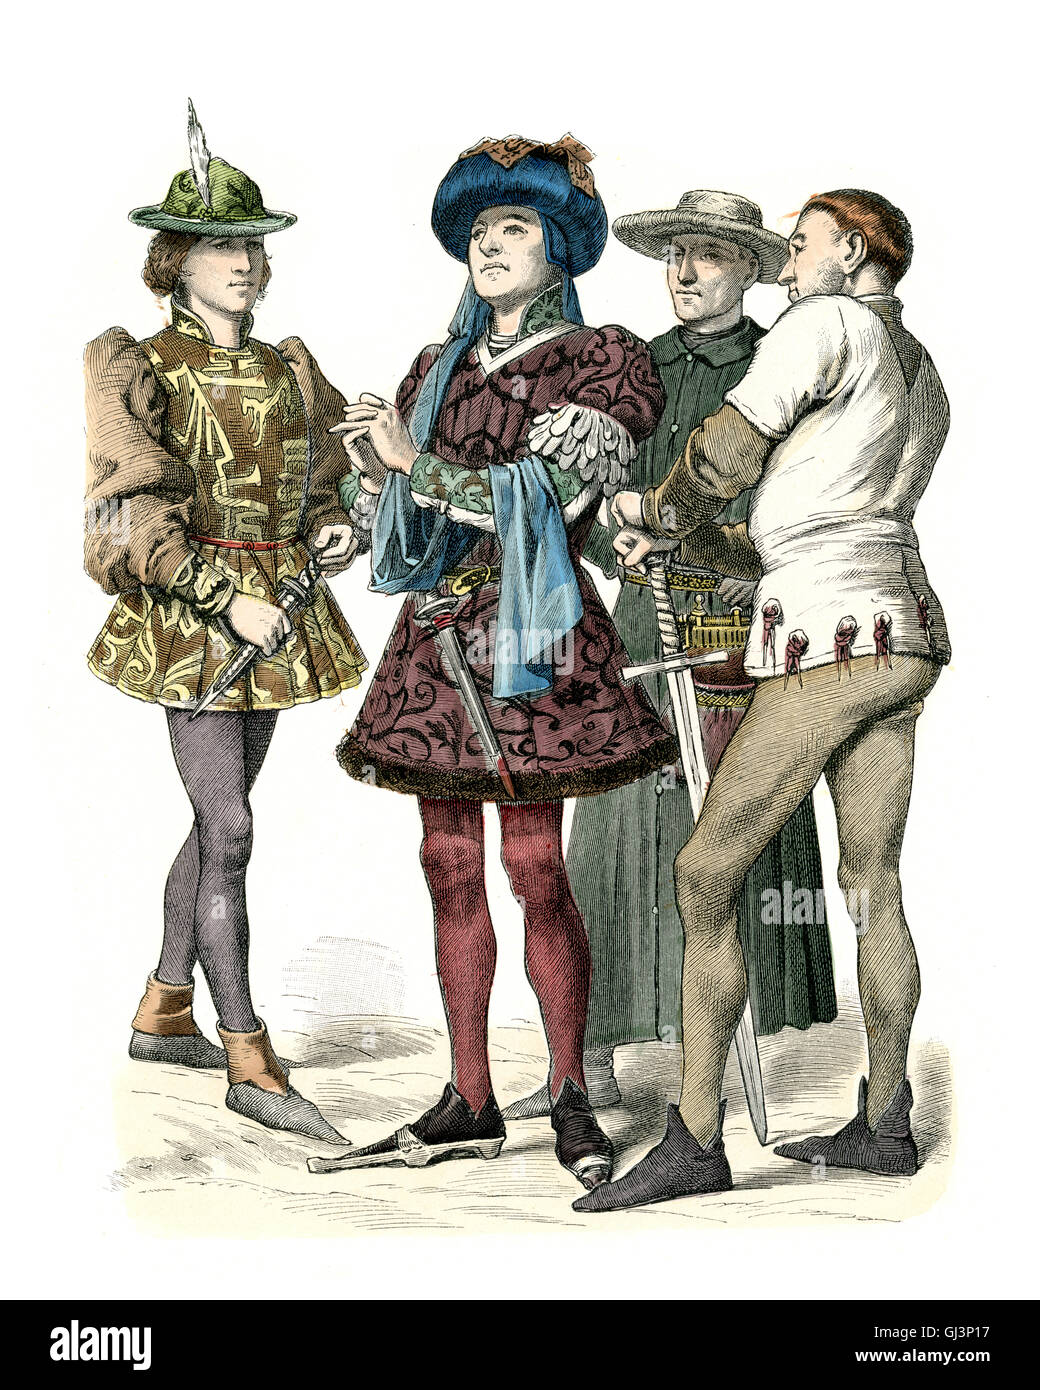 La mode médiévale bourguignonne - milieu du xve siècle Banque D'Images